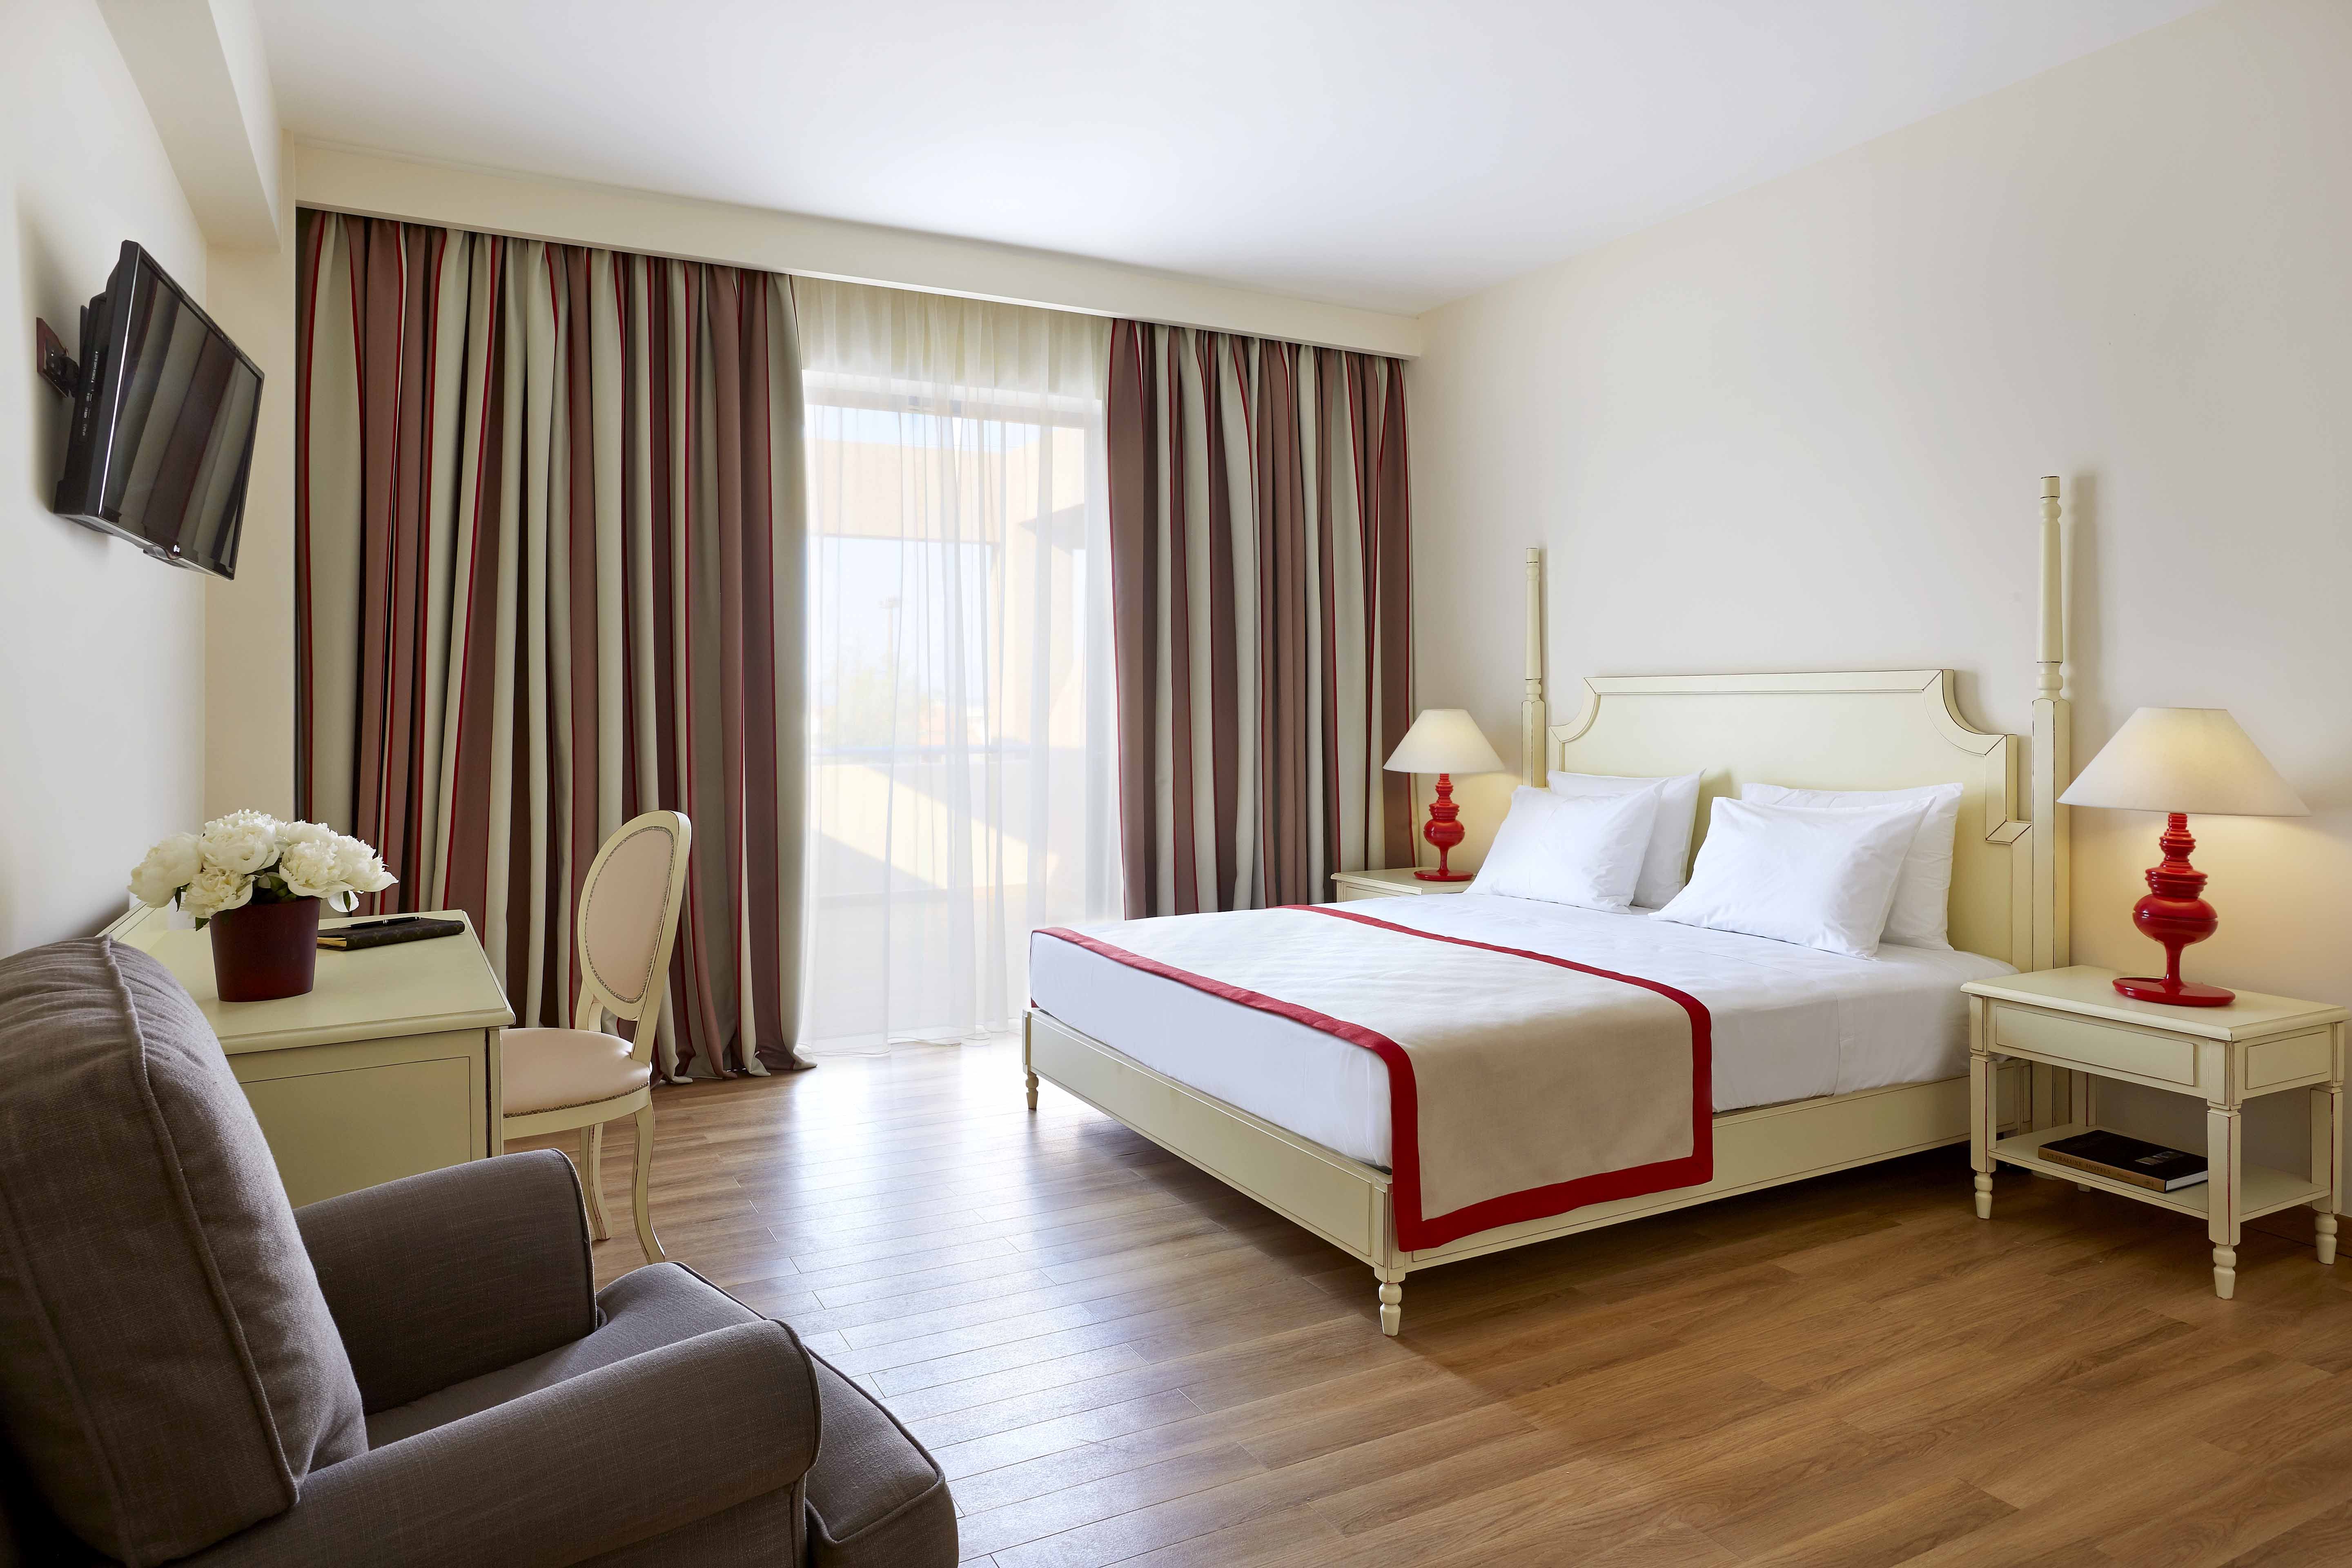 Alkyon Resort Ηοtel & Spa 5* στο Βραχάτι Κορινθίας: μια υπέροχη καλοκαιρινή προσφορά για μικρούς και μεγάλους!